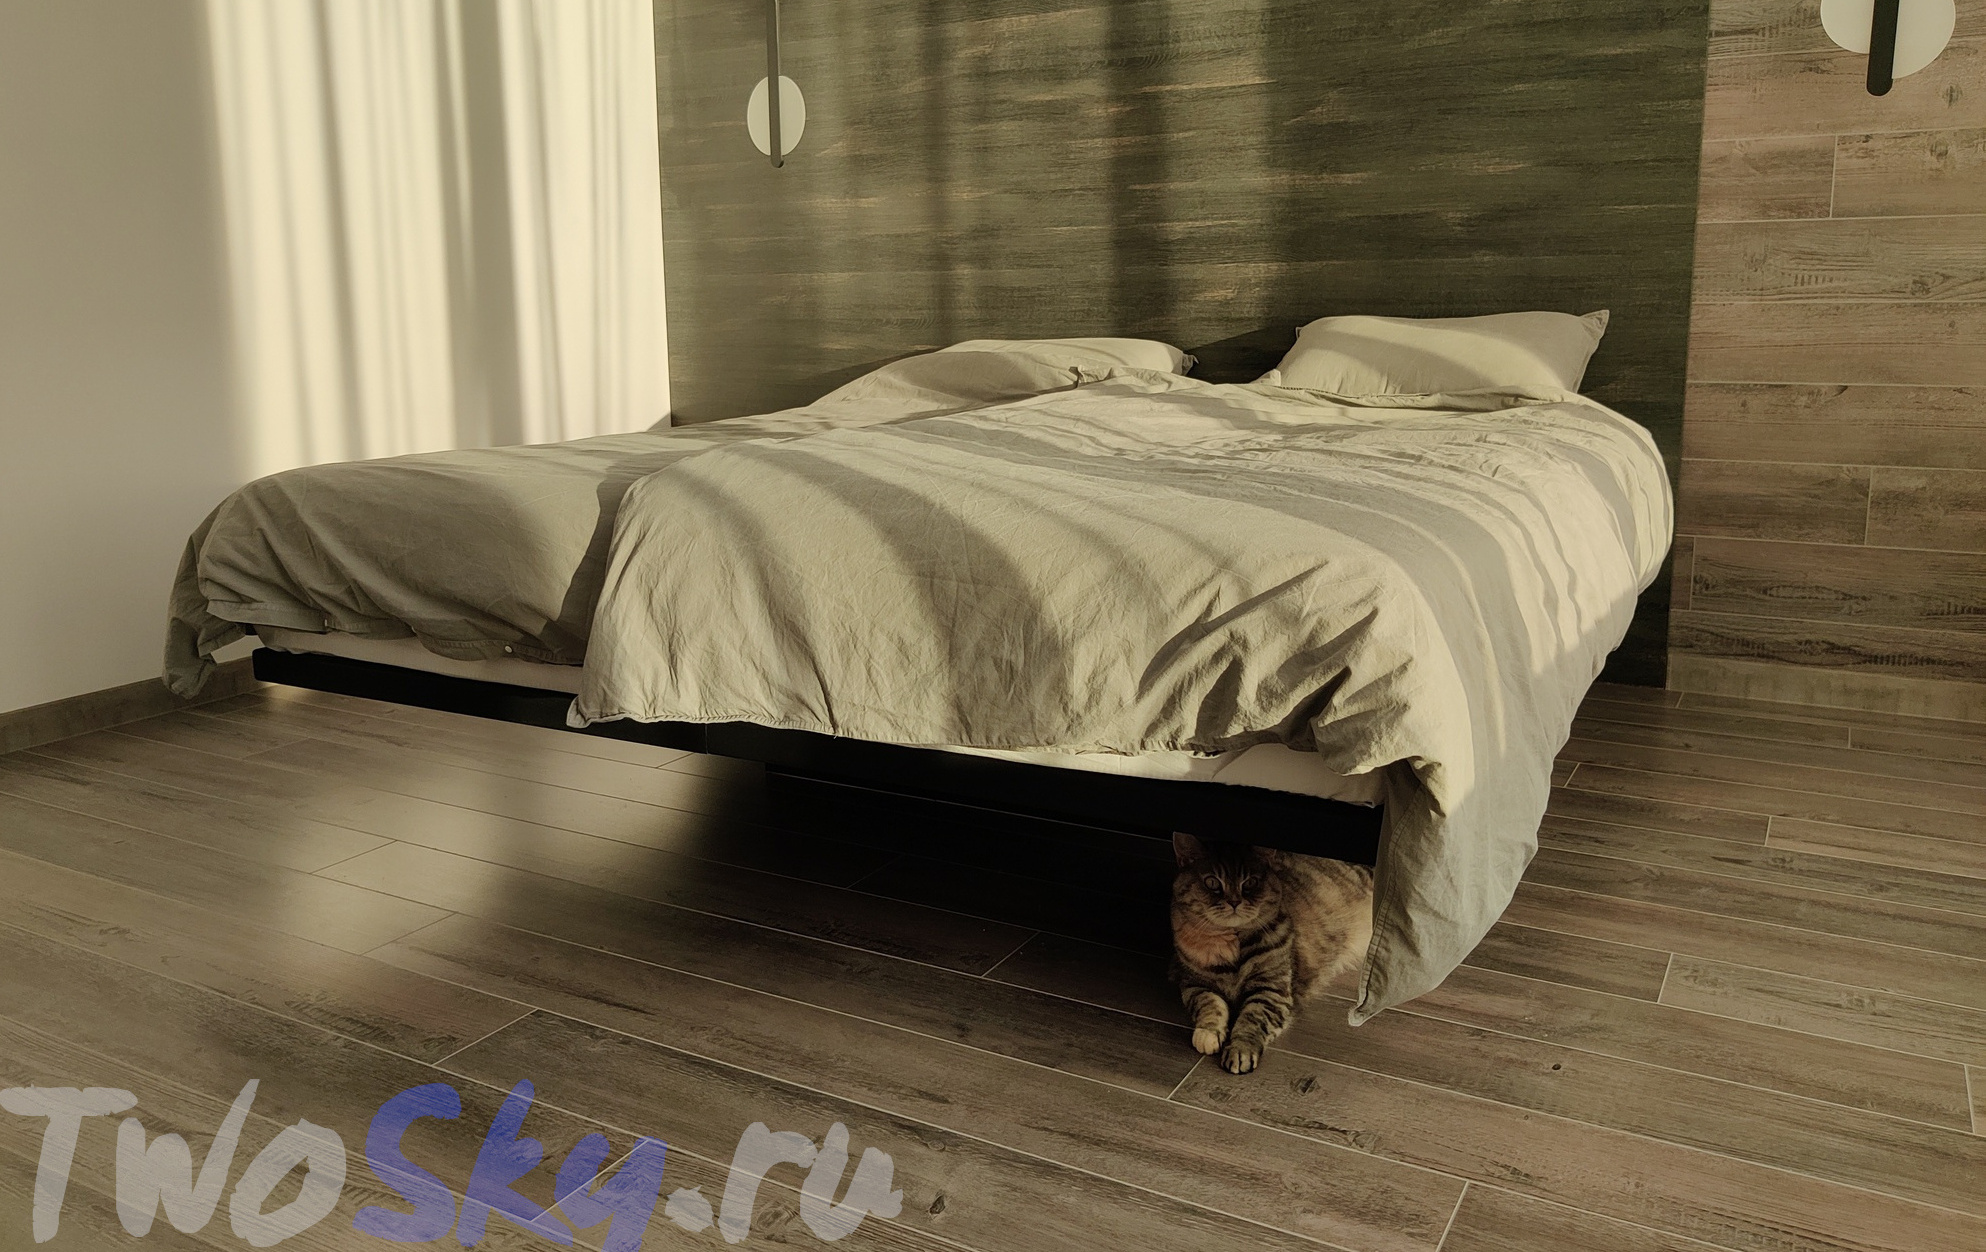 Парящая кровать TwoSky 160 на 200 см. фото 1